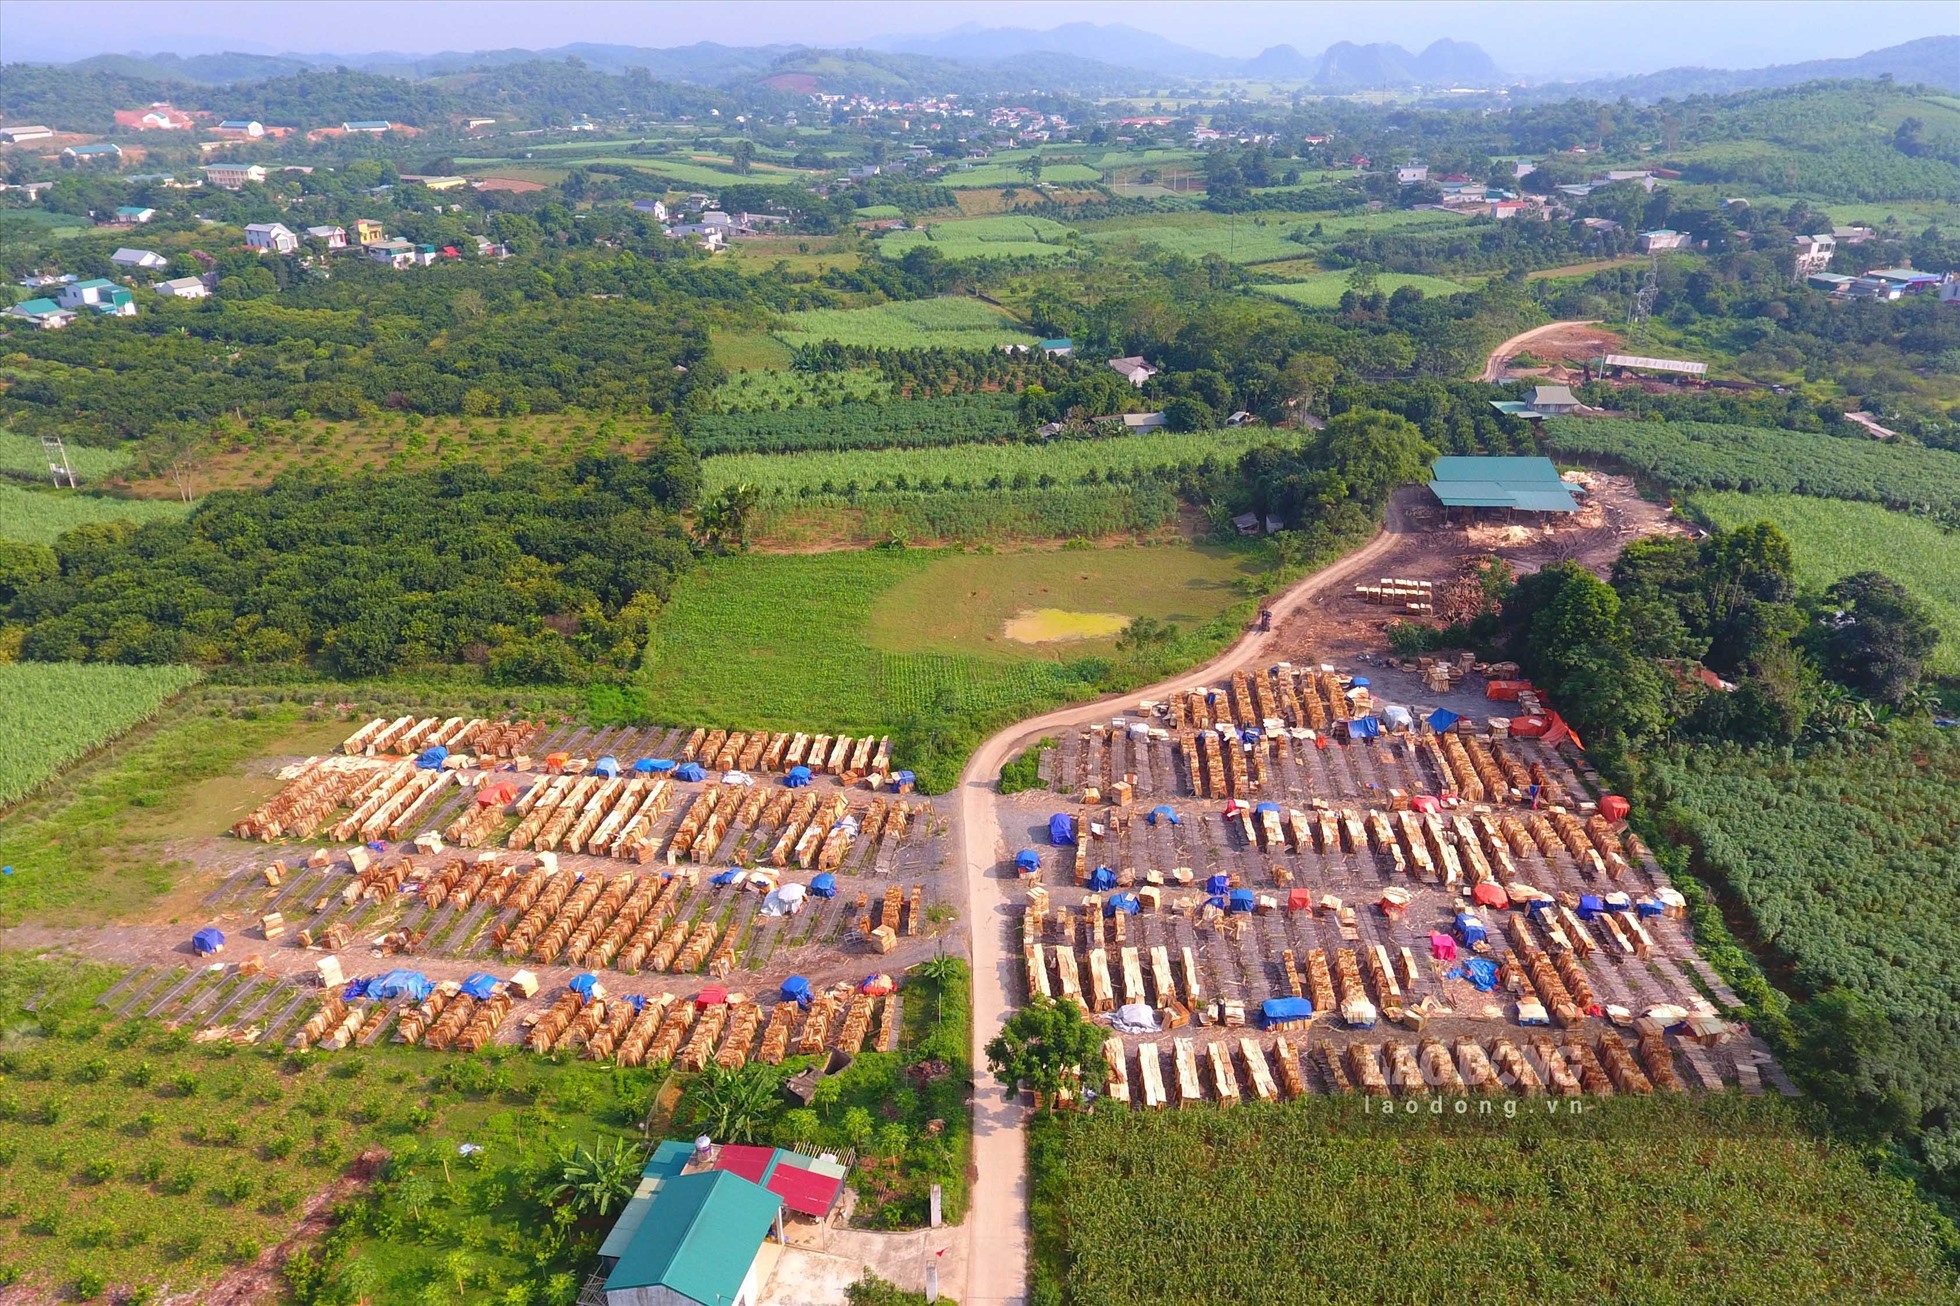 Kết quả kiểm tra cho thấy 7 xưởng keo trên địa bàn huyện Tân Lạc không đủ hồ sơ giấy tờ pháp lý đủ điều kiện kinh doanh, sản xuất chế biến gỗ keo. Ảnh: Trần Trọng.